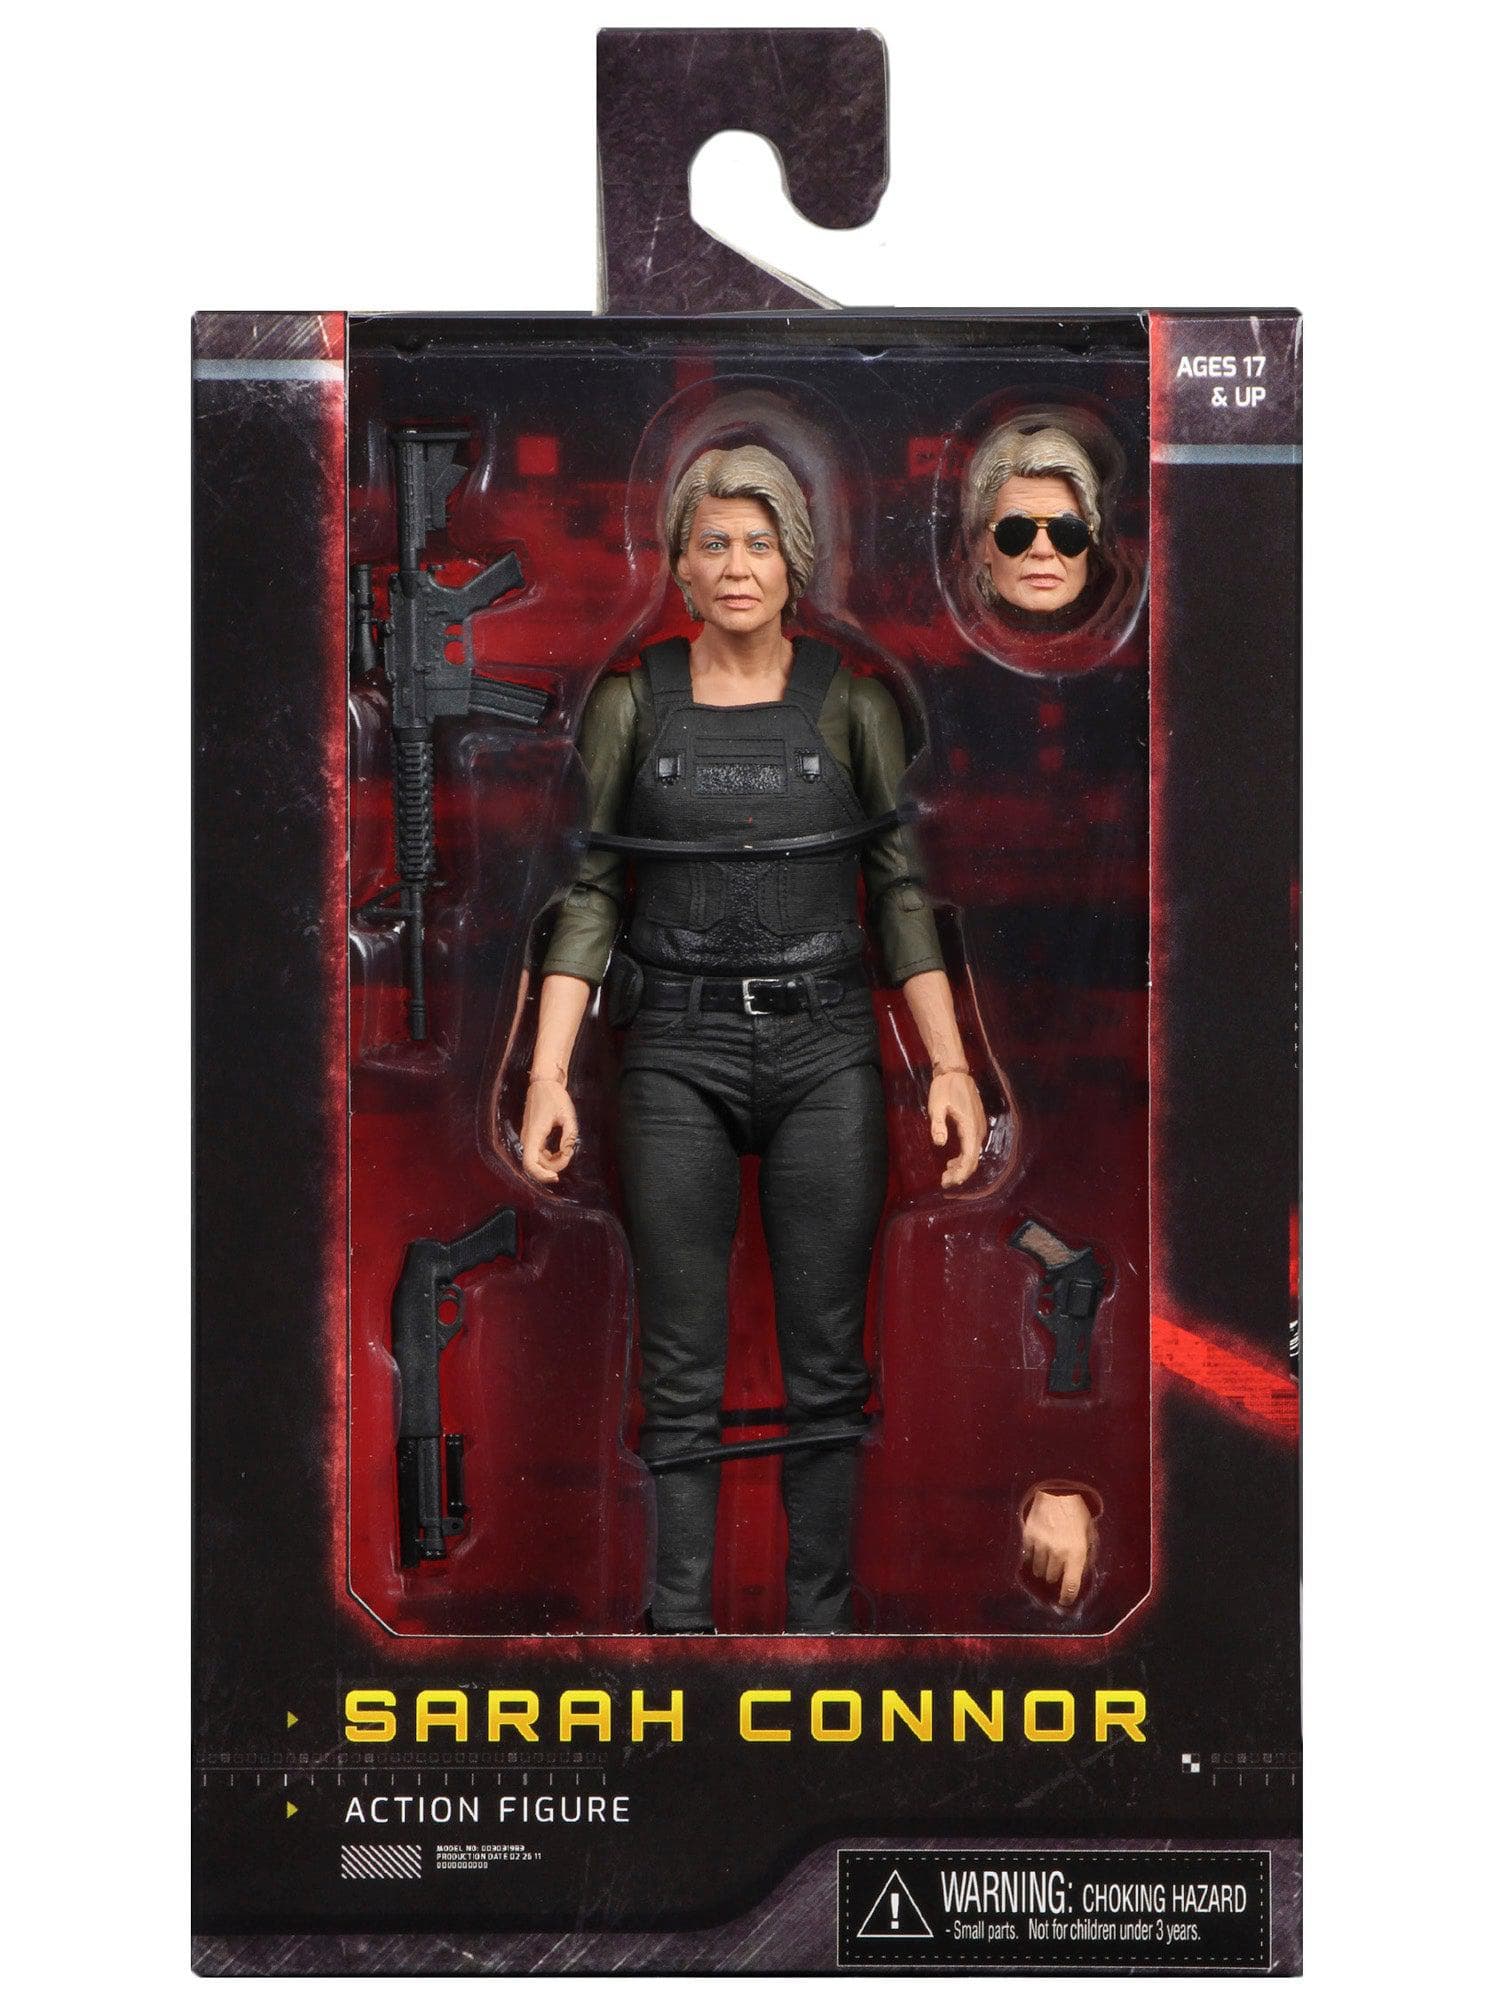 NECA - Terminator Dark Fate (2019) - 7" Figure - Sarah Connor - costumes.com